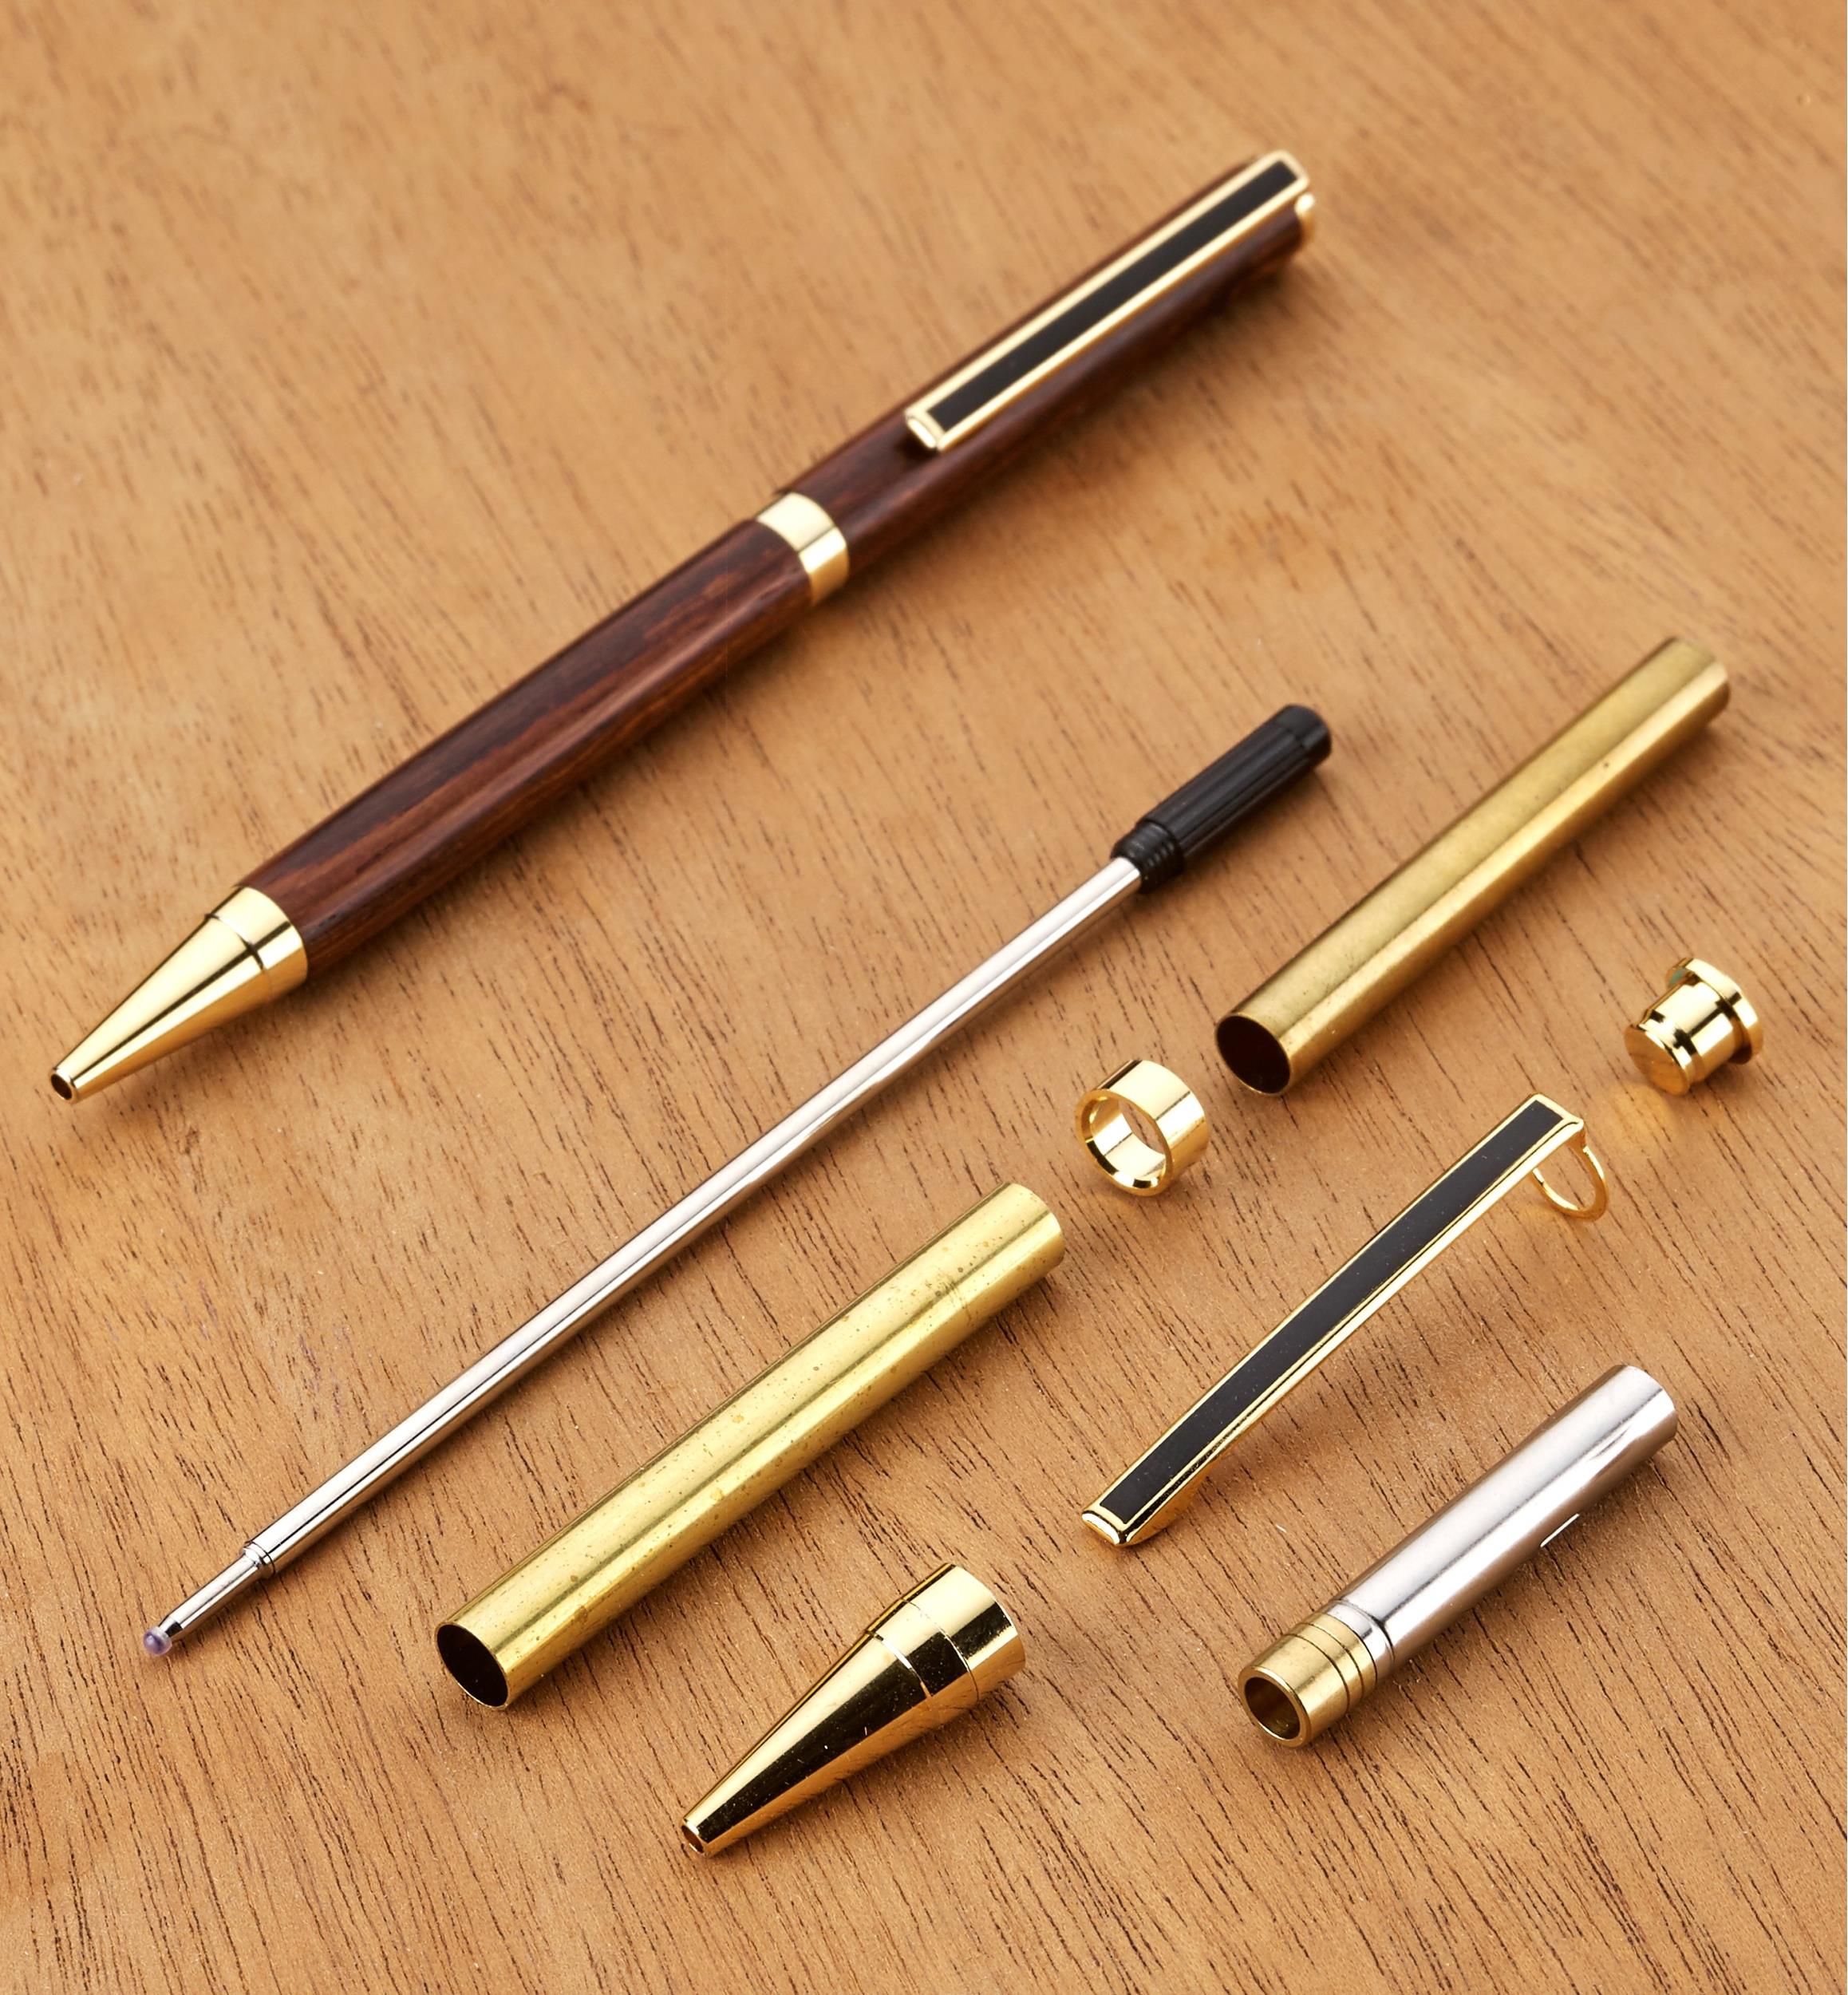 Outil d'insertion stylo poignée en bois pitw insérant le tube en laiton en ébauches de stylo 